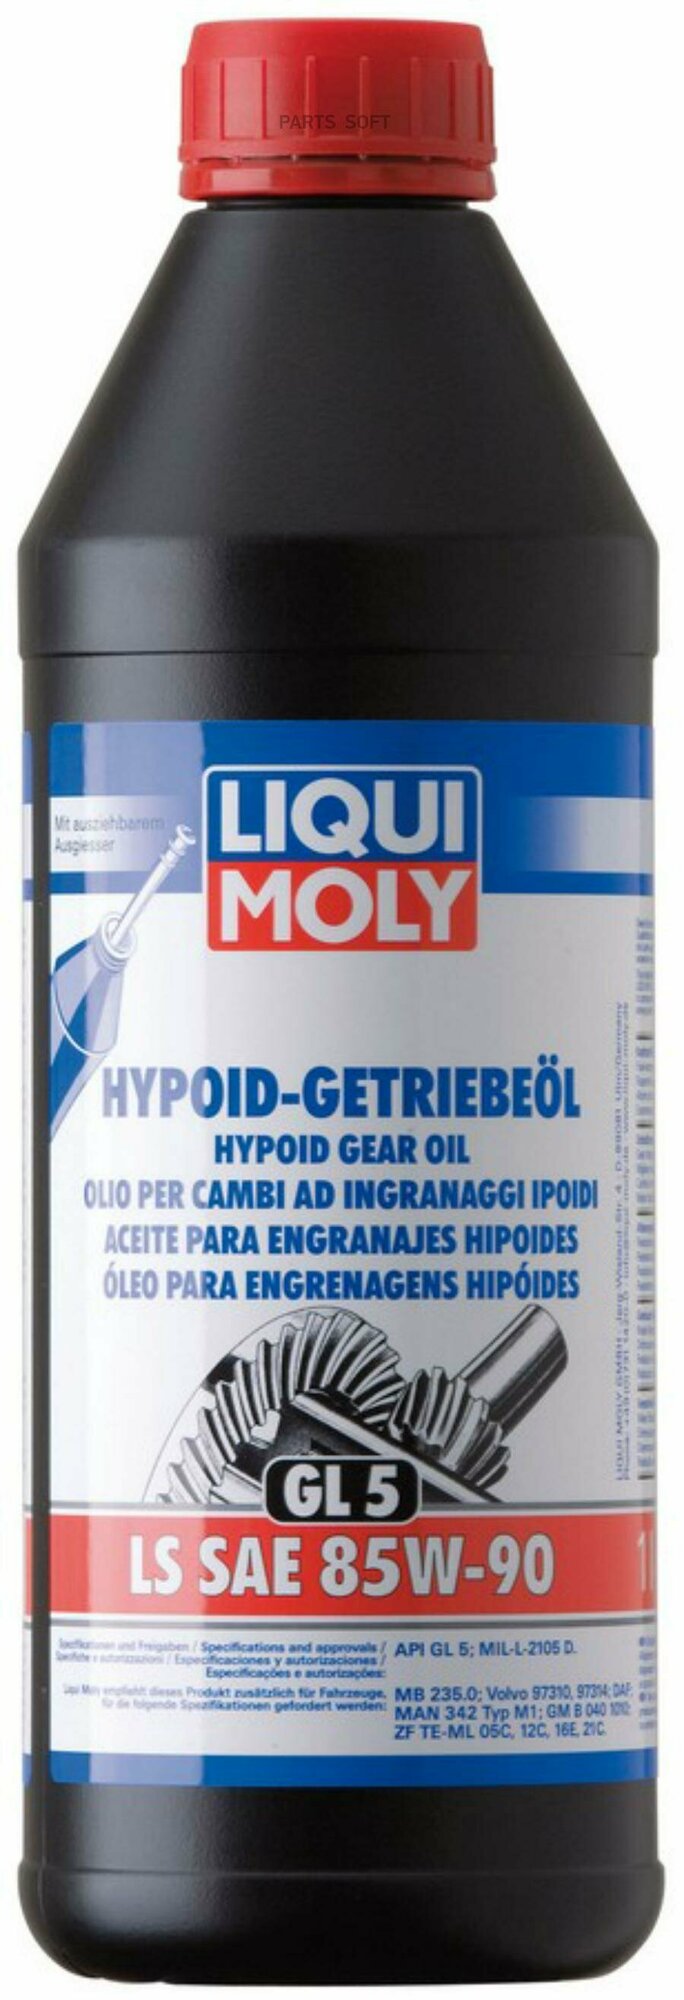 LIQUI MOLY 1410 Минеральное трансмиссионное масло Hypoid-Getrieb. LS 85W-90 GL-5 1л